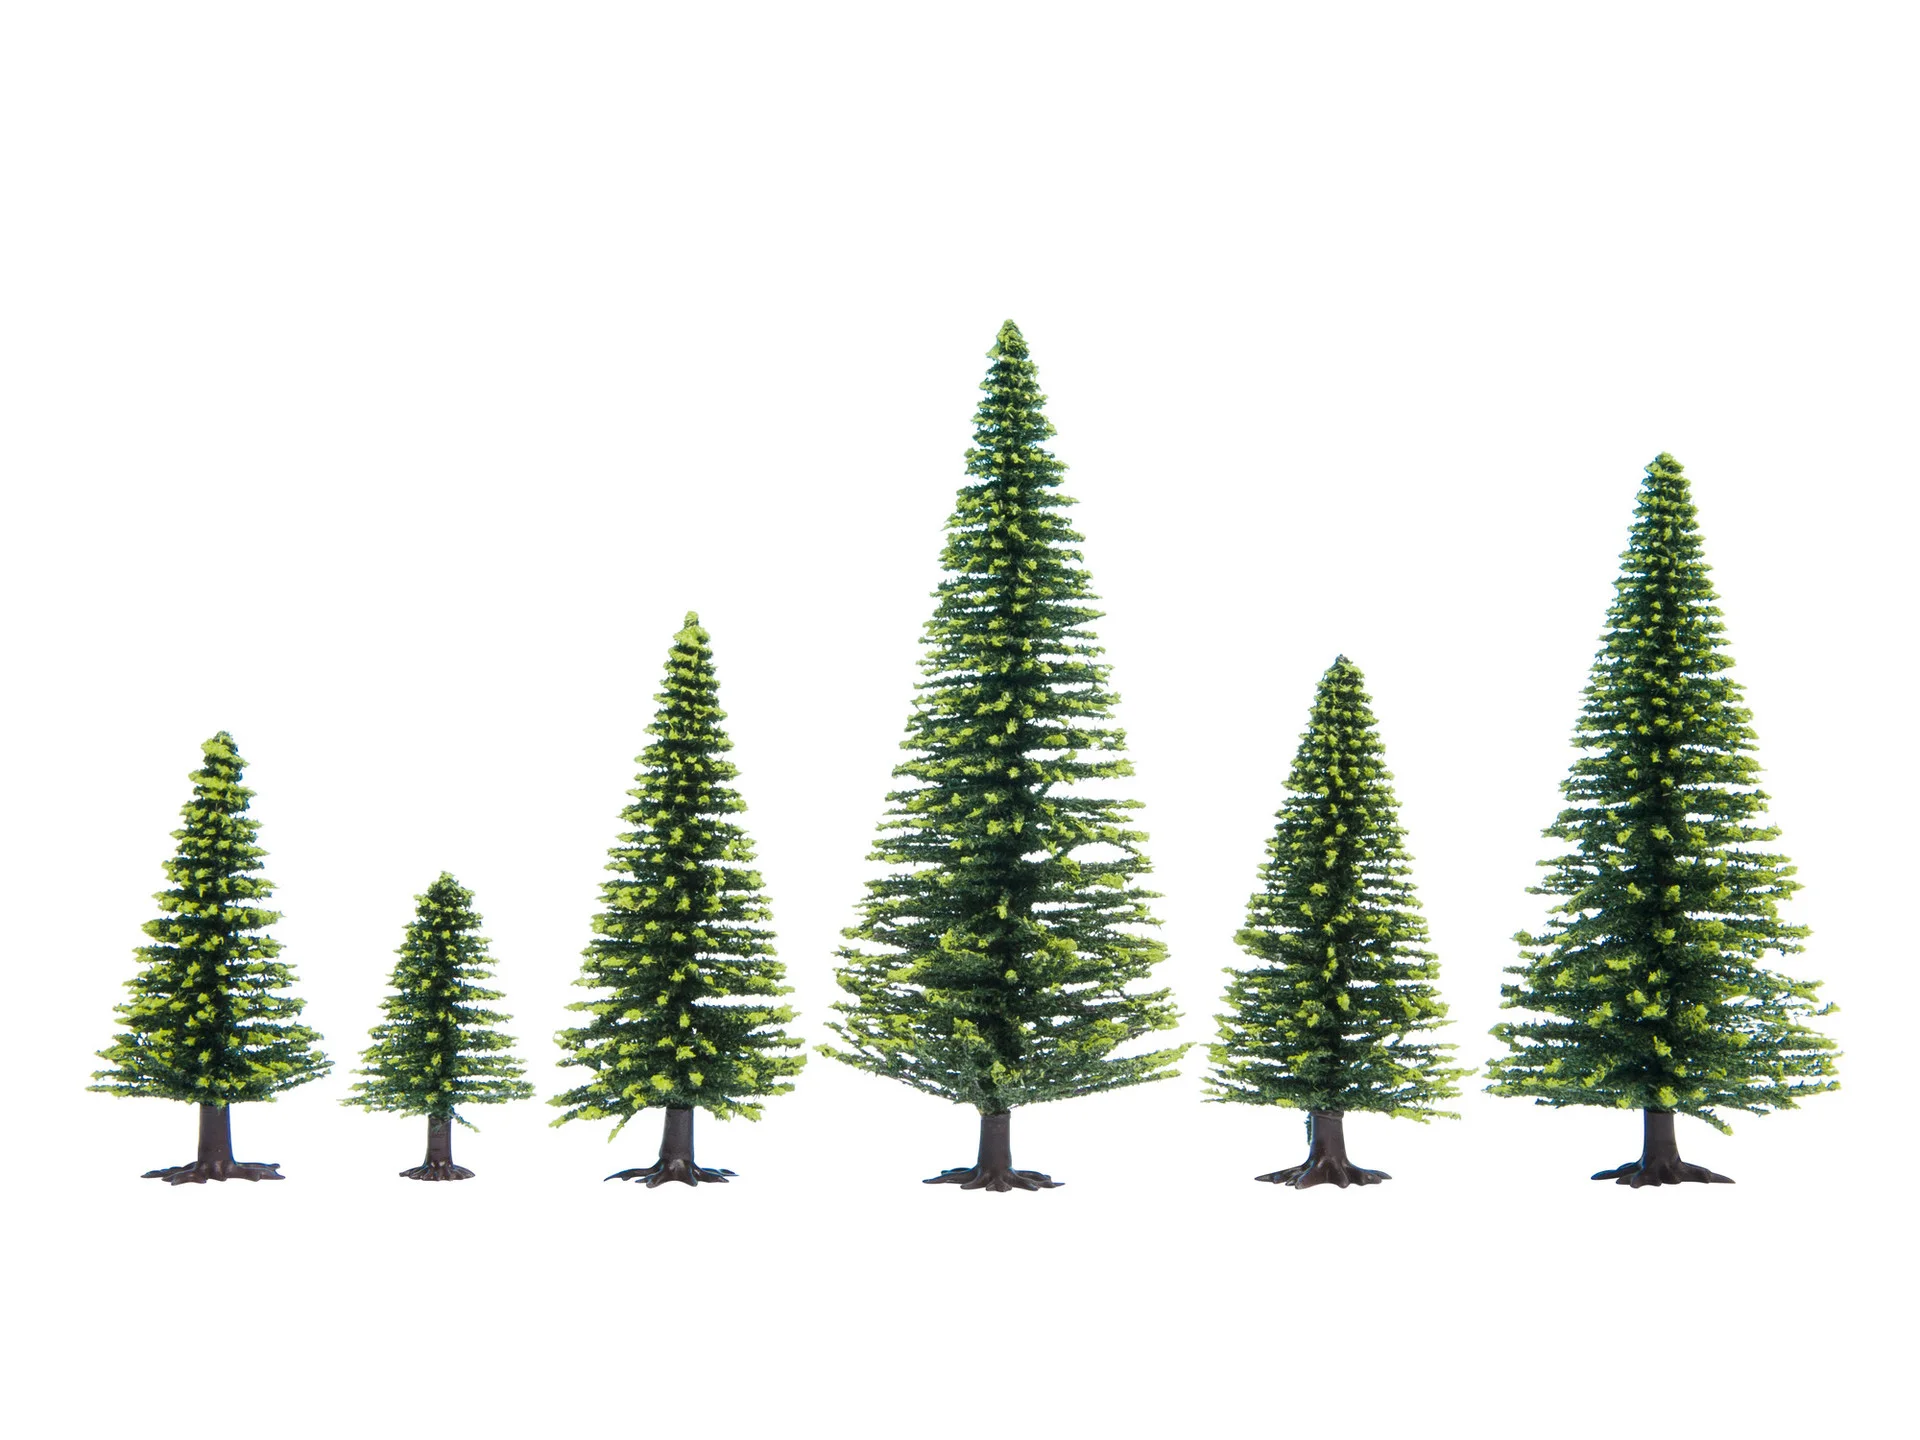 NOCH 26825 H0 TT Granar/Model Spruce Trees 50 stycken/pcs